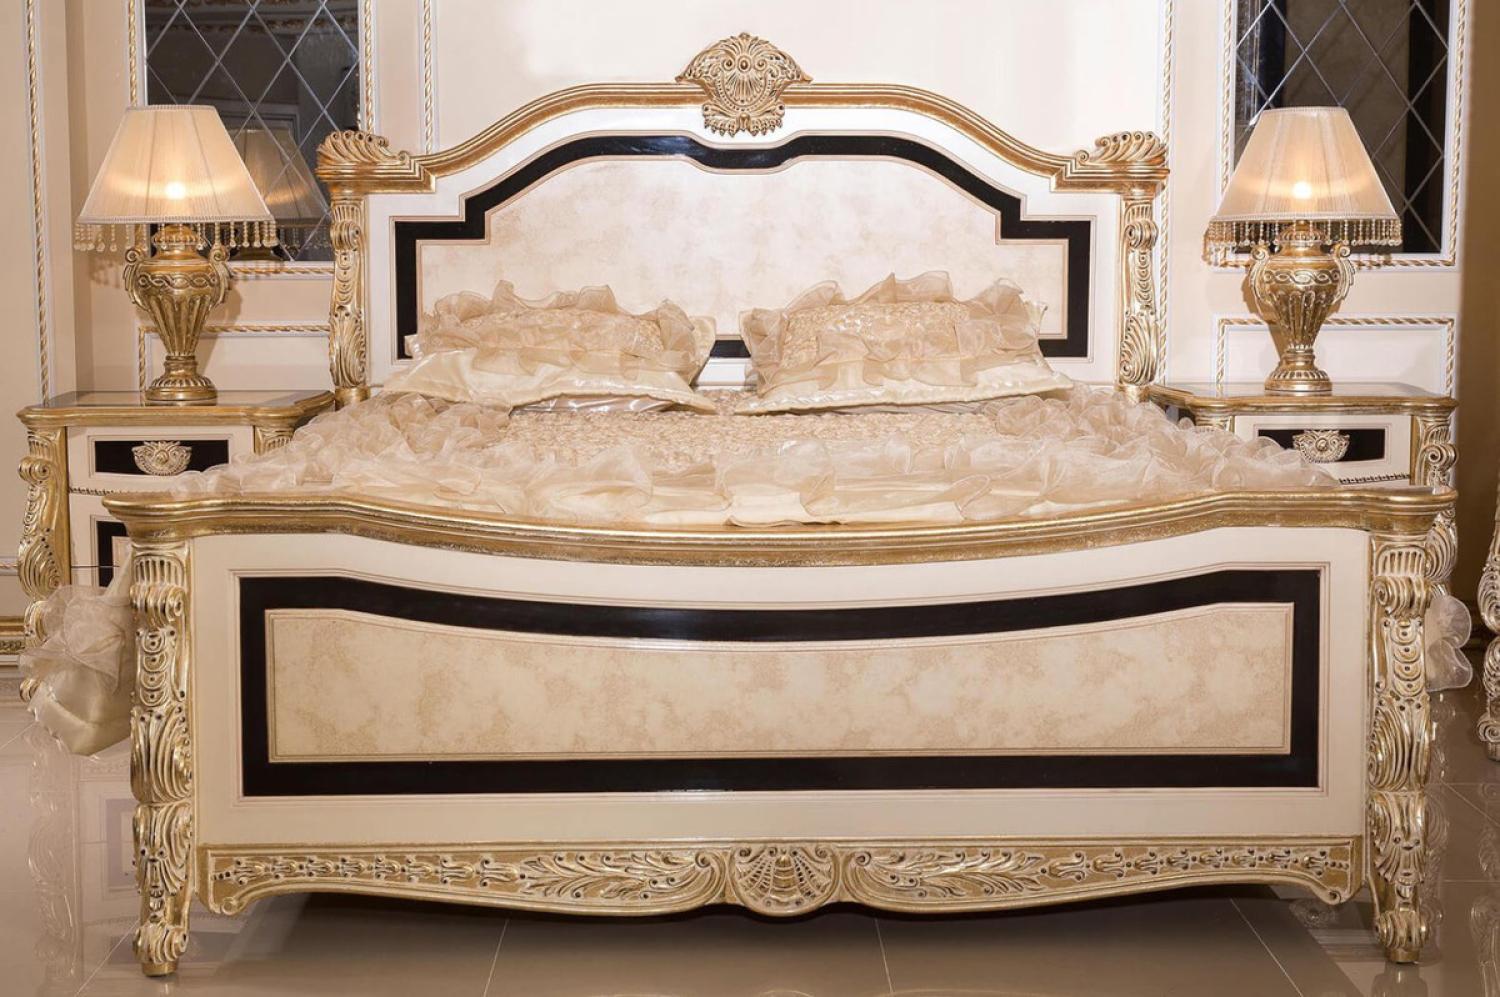 Casa Padrino Luxus Barock Schlafzimmer Set Weiß / Beige / Schwarz / Gold - 1 Barock Doppelbett mit Kopfteil & 2 Barock Nachtkommoden - Luxus Schlafzimmer Möbel im Barockstil - Barock Interior Bild 1